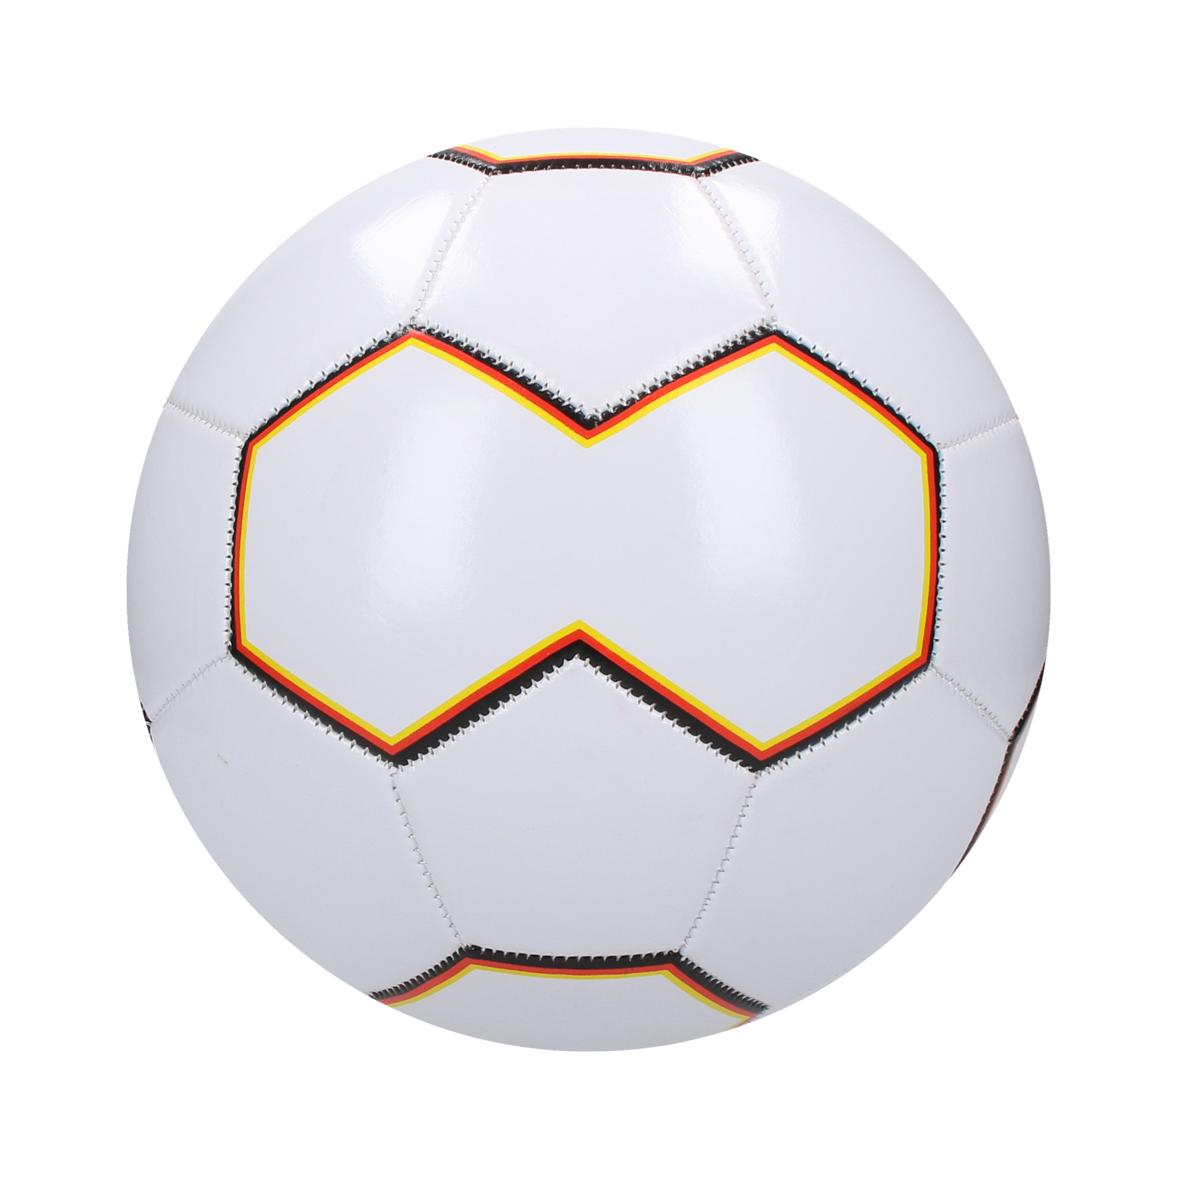 Ballon de football personnalisé - Charly - Zaprinta France